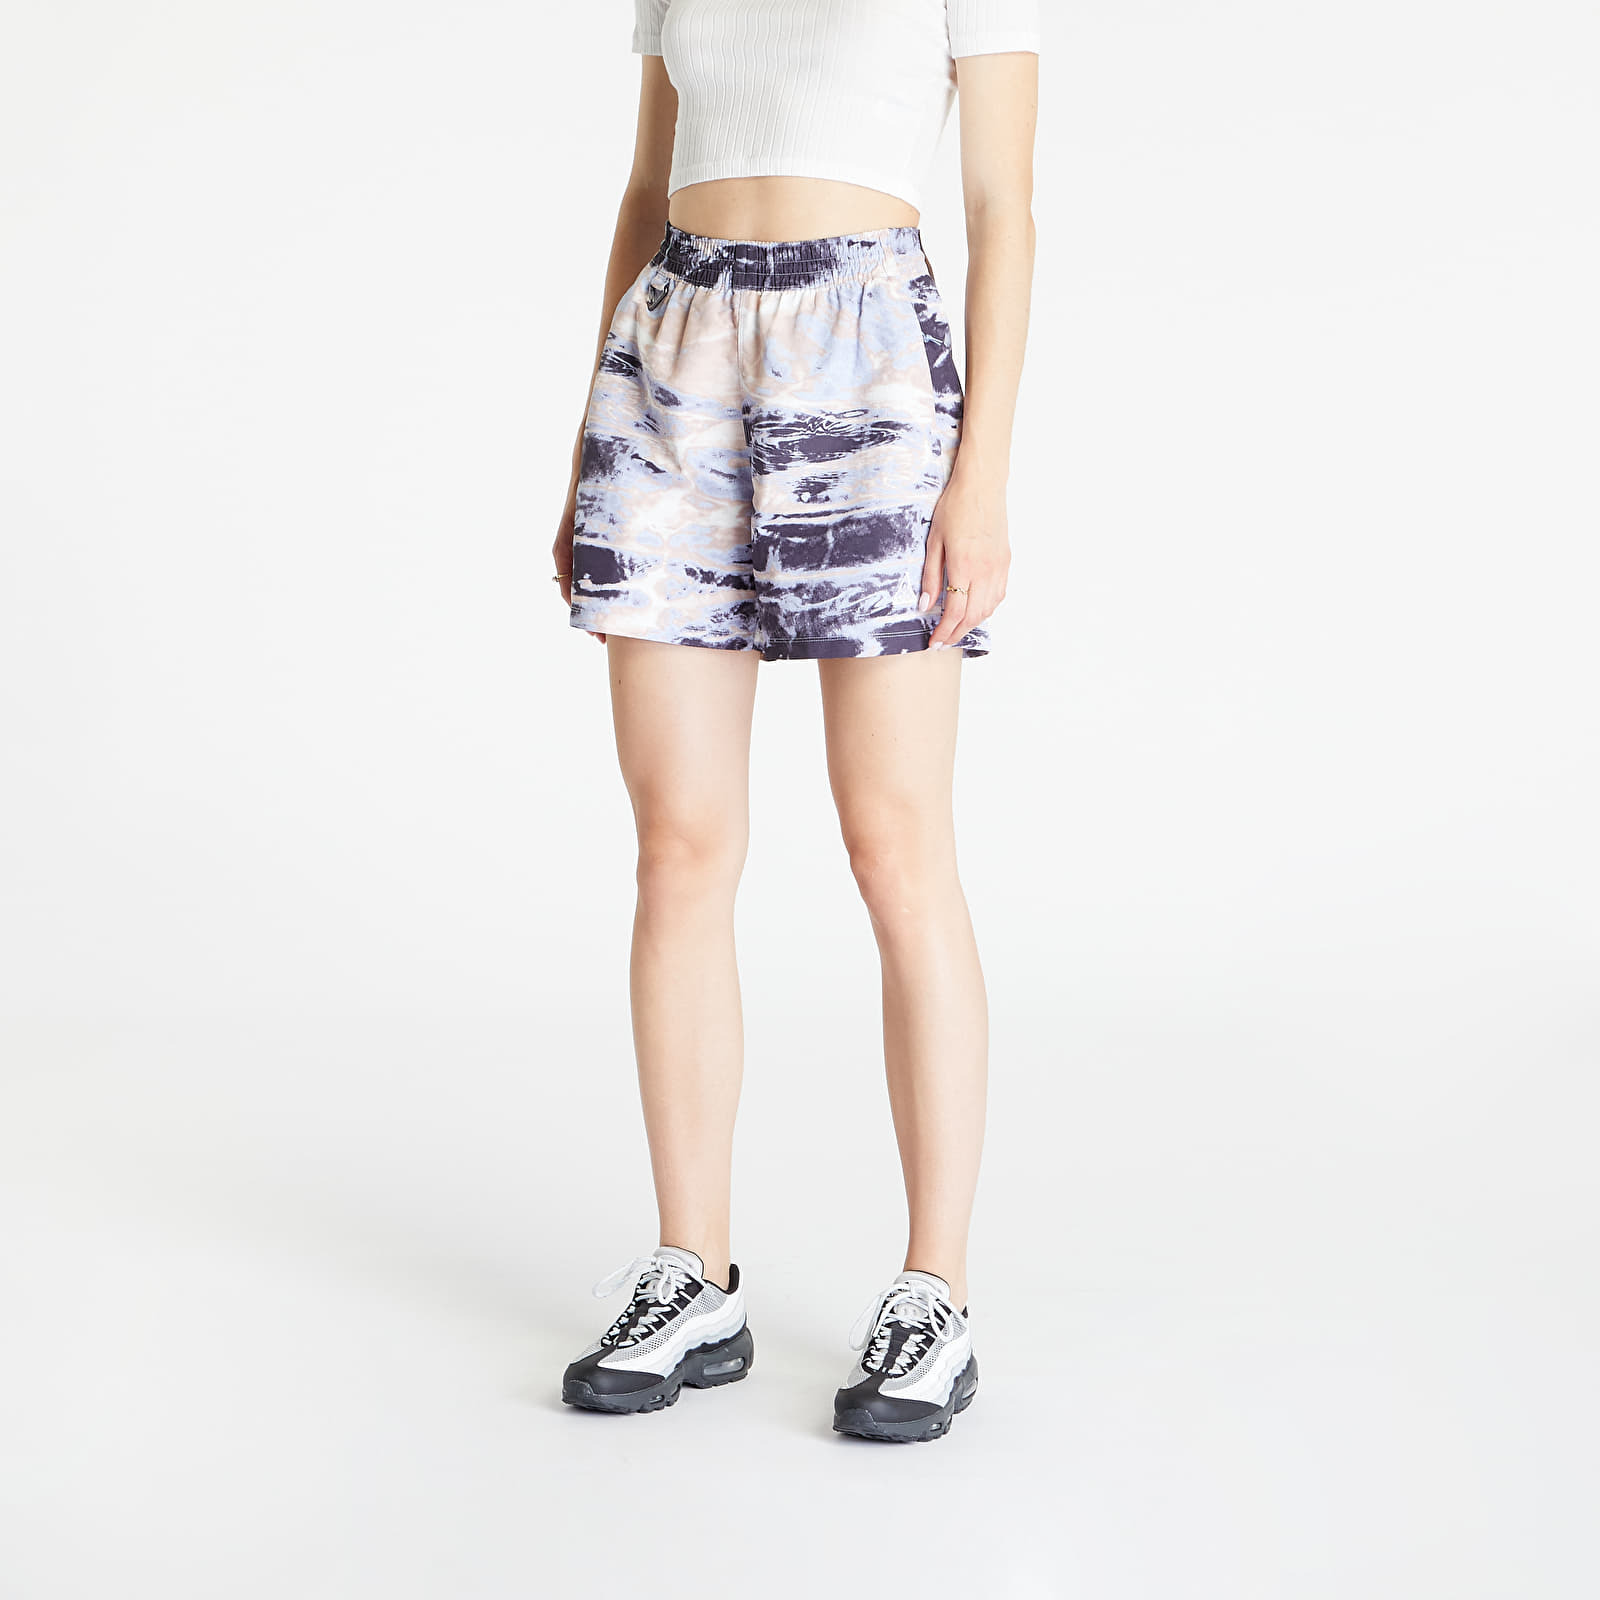 Nike - acg women's oversized allover print shorts gridiron/ summit white